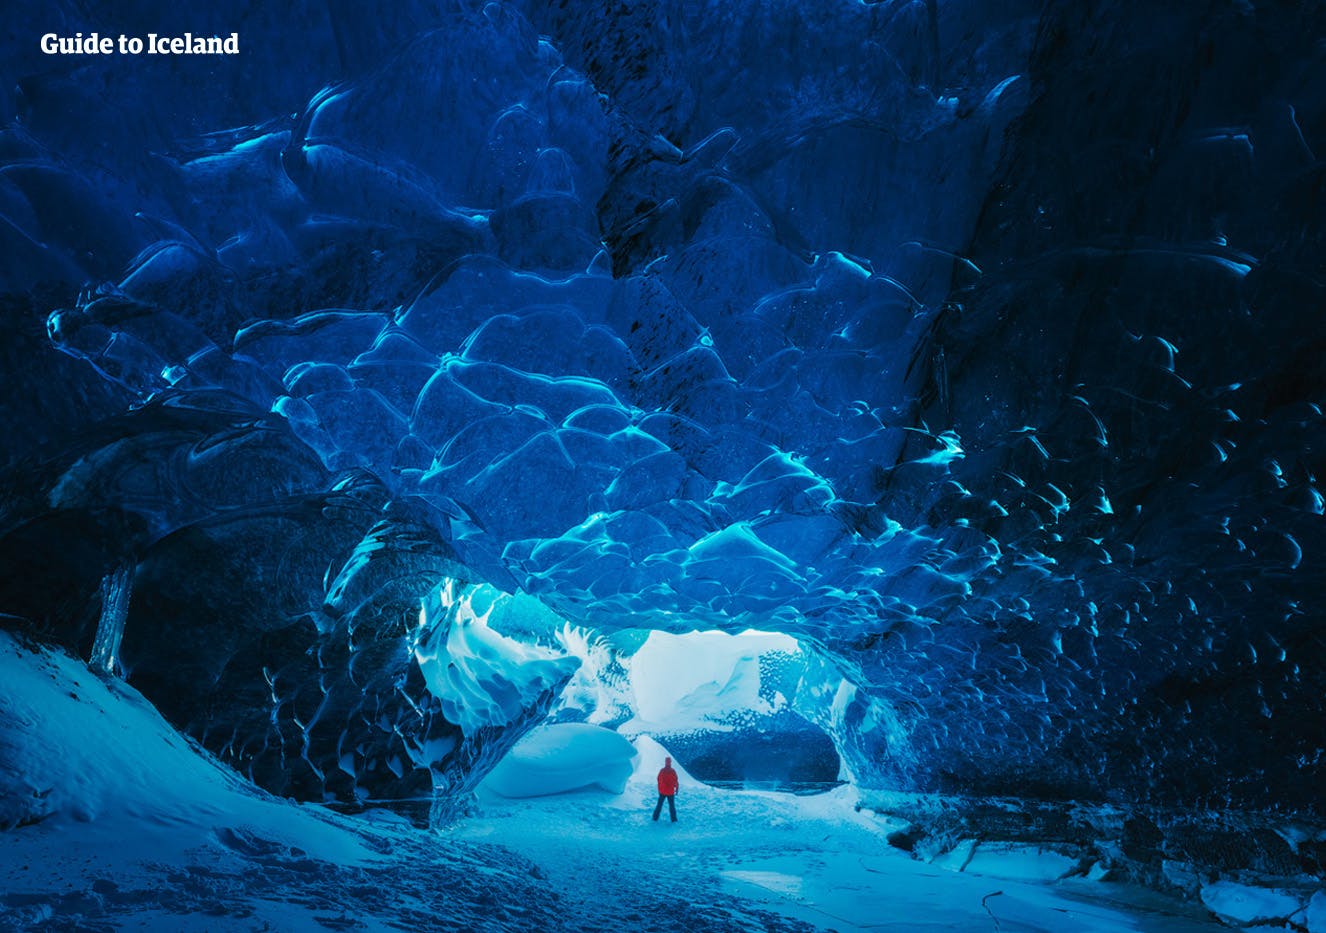 L'interno blu abbagliante delle grotte di ghiaccio islandesi.